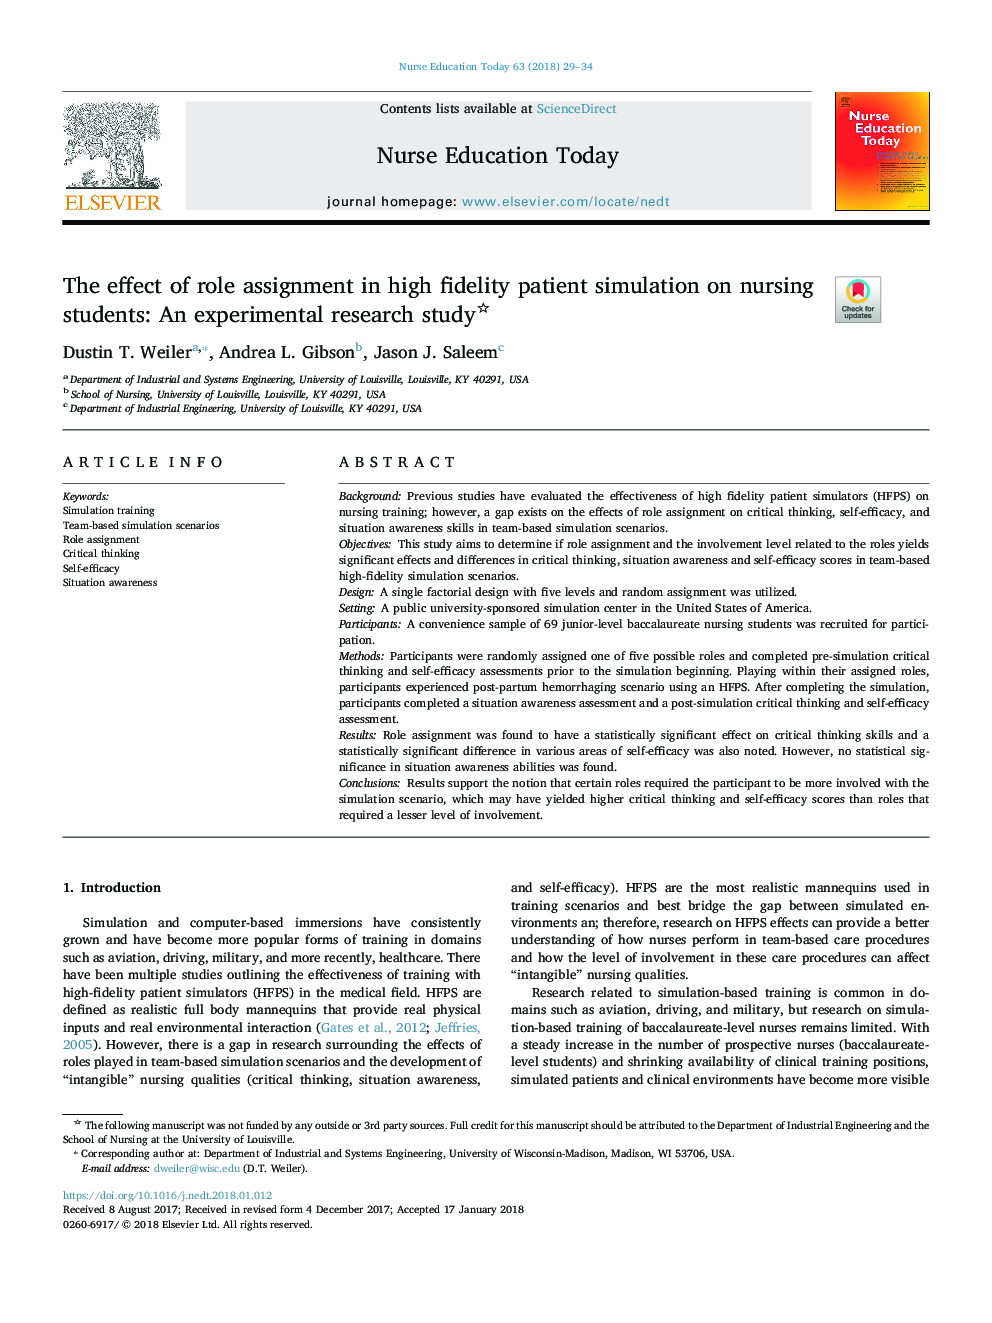 اثر تخصیص نقش در شبیه سازی بیمار با وفاداری بالا بر دانشجویان پرستاری: یک مطالعه تجربی 